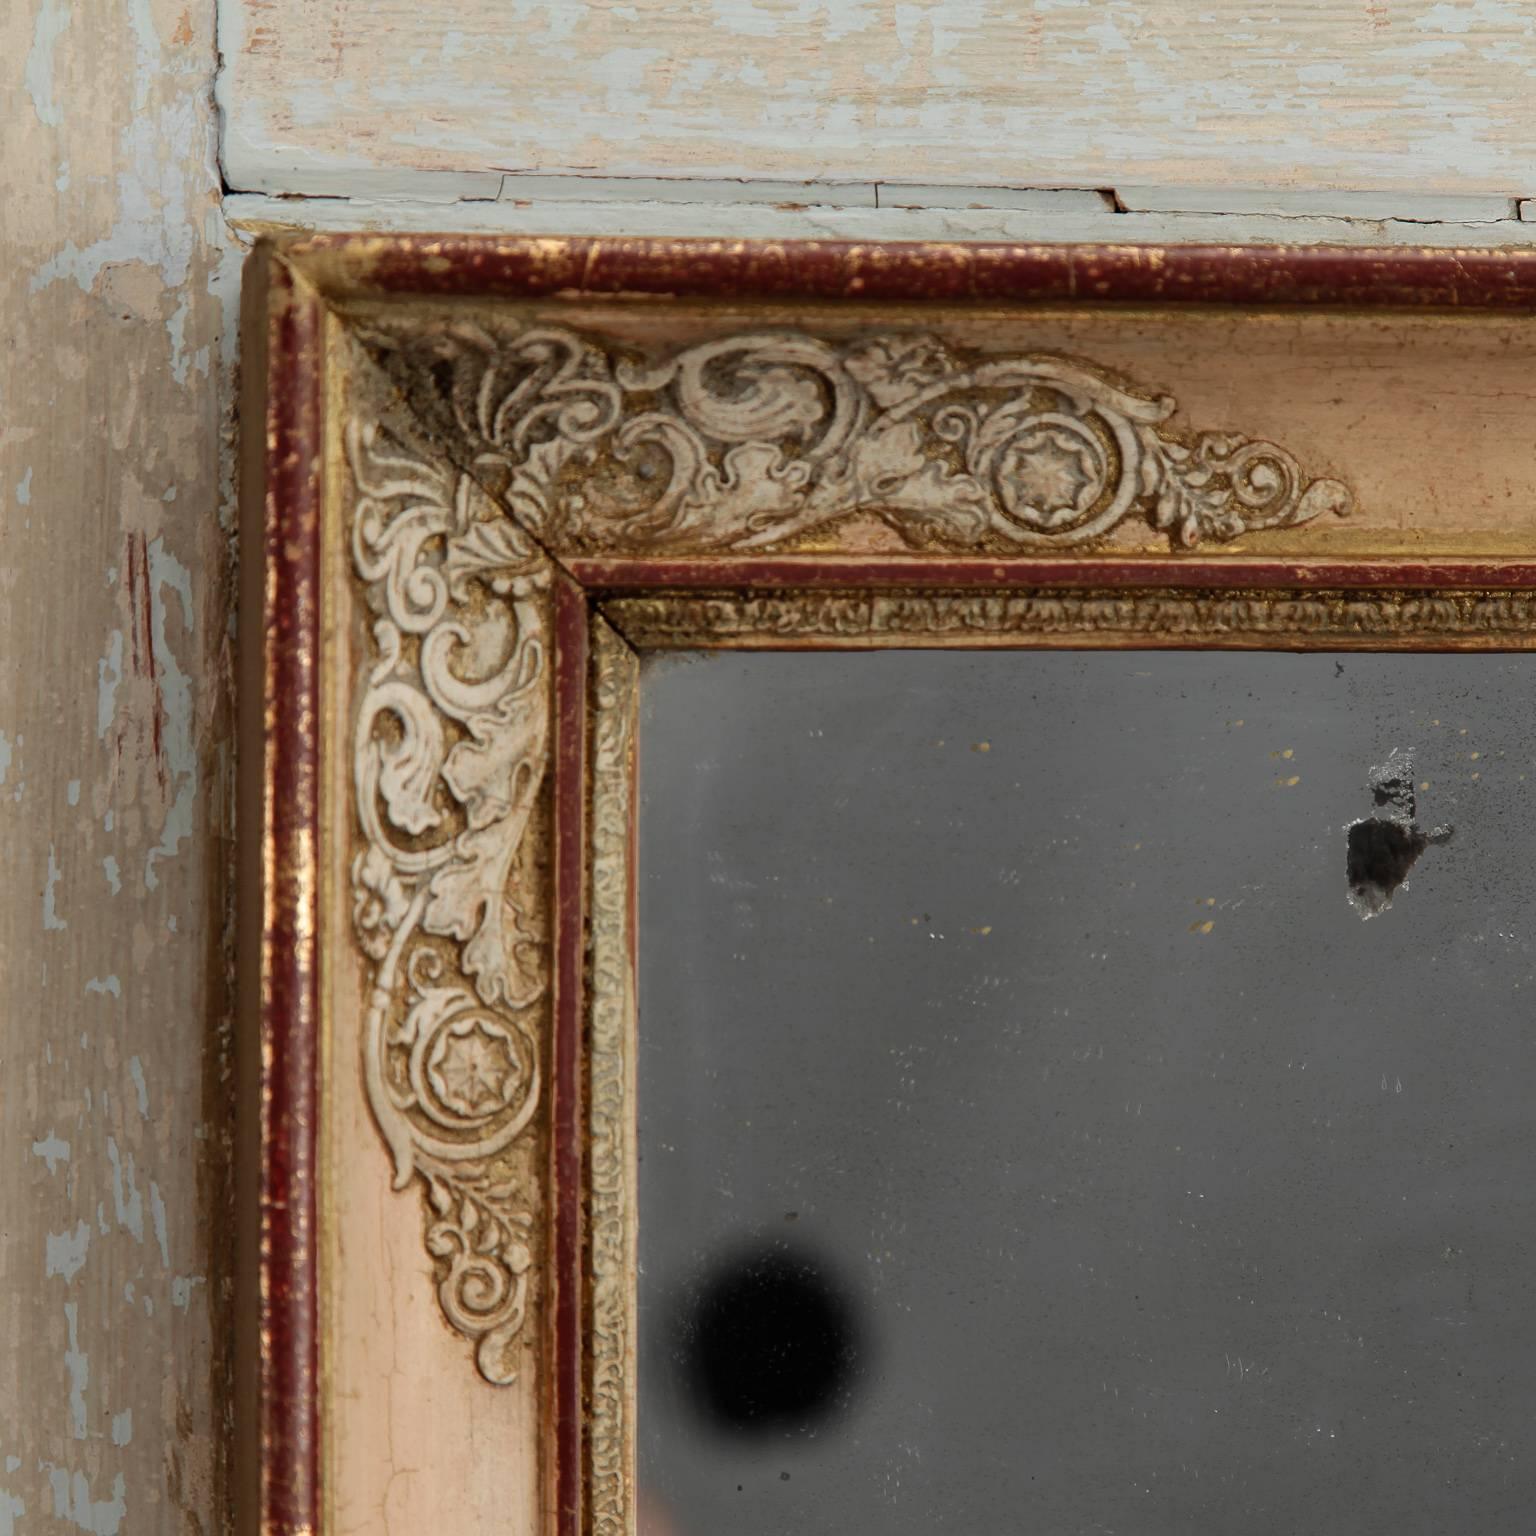 Spiegel im Trumeau-Stil, gefunden in Italien, ca. 1920er Jahre. Klassische Figuren in Relief auf der Oberseite antik-weiß lackiert mit vergoldeten Akzenten an den Rändern.  Tatsächliche Größe des Spiegels:  40.25